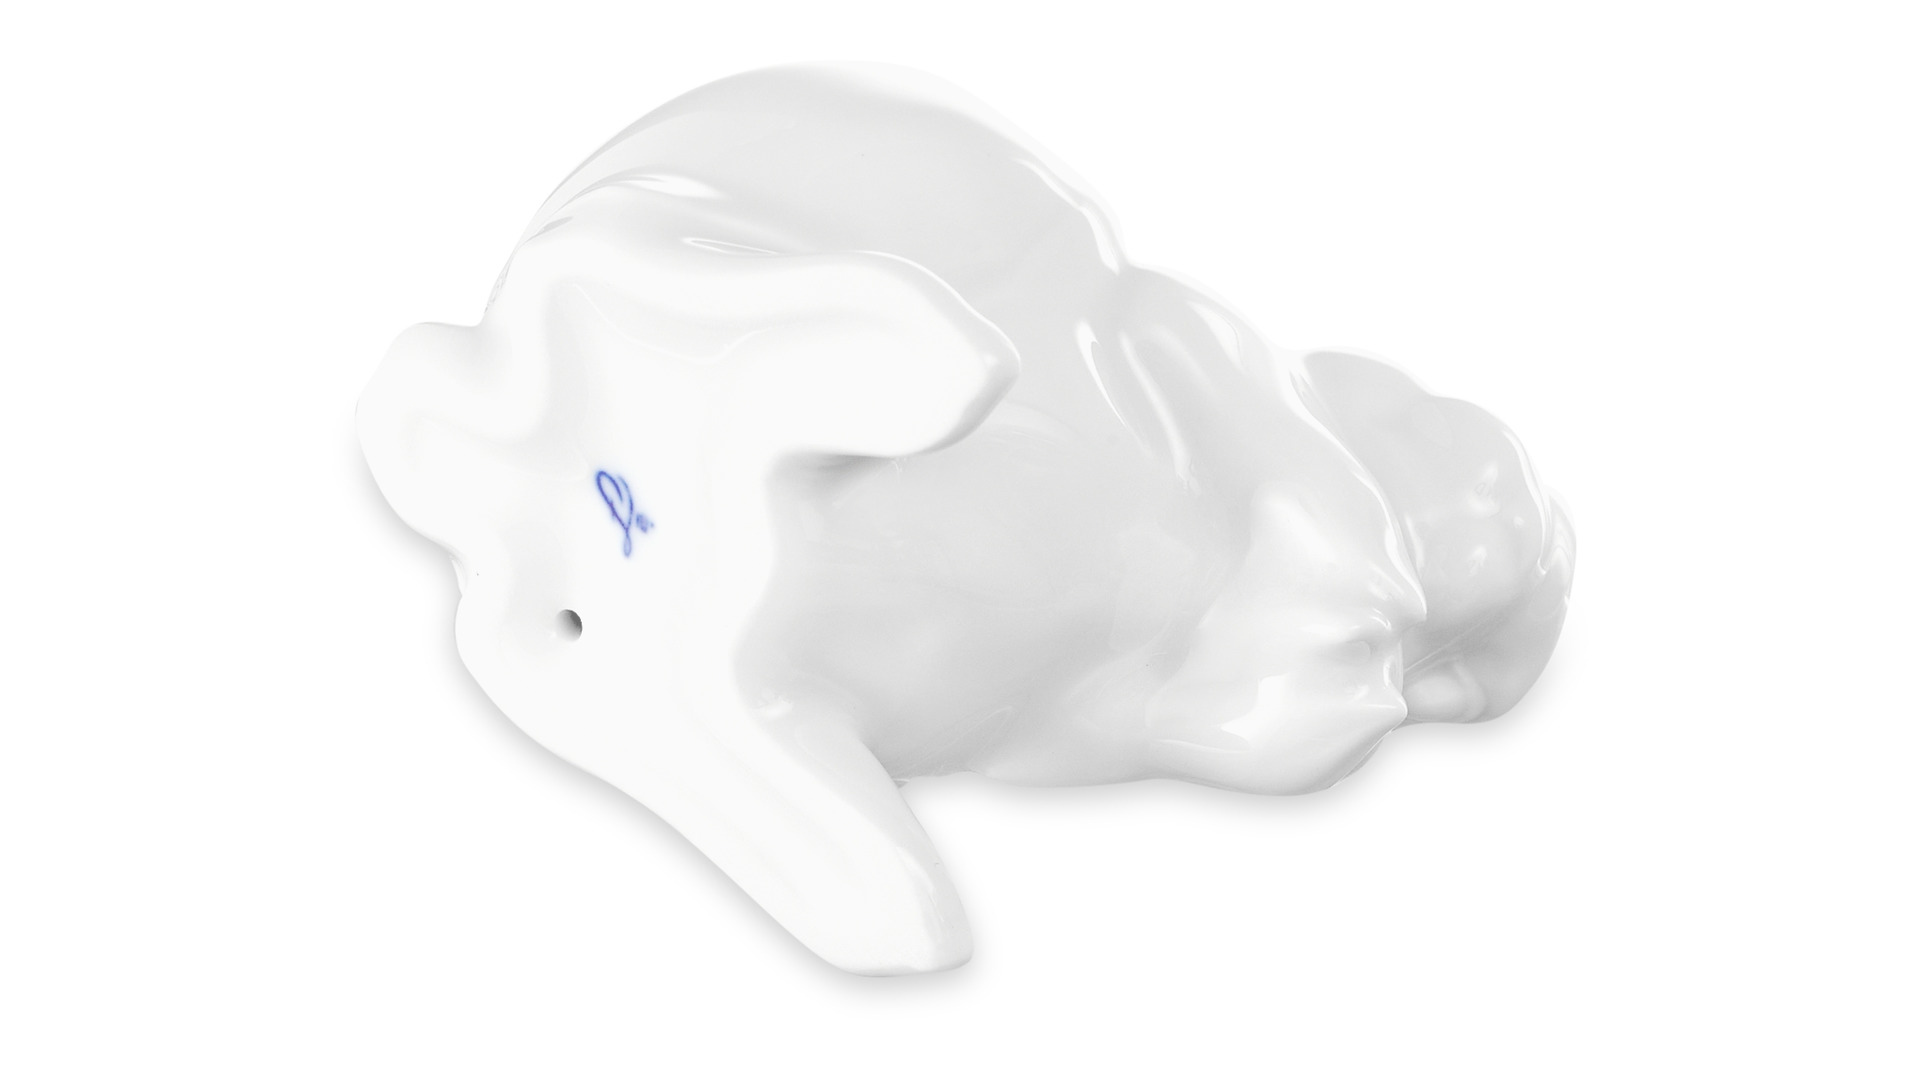 Фигурка Furstenberg Кролик Каспер 8 см, белая